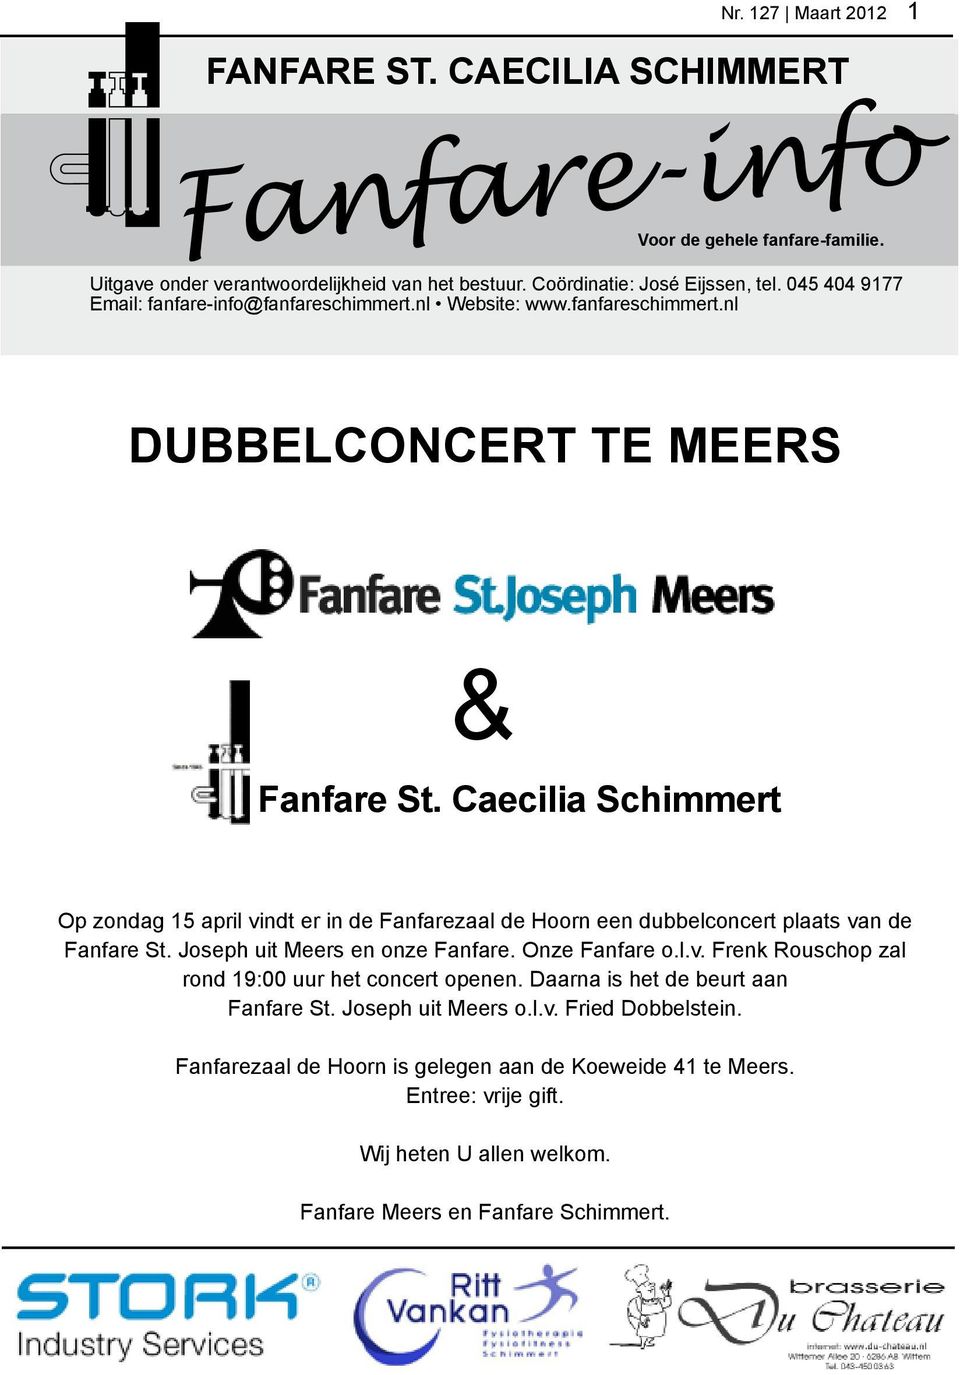 Caecilia Schimmert Op zondag 15 april vindt er in de Fanfarezaal de Hoorn een dubbelconcert plaats van de Fanfare St. Joseph uit Meers en onze Fanfare. Onze Fanfare o.l.v. Frenk Rouschop zal rond 19:00 uur het concert openen.